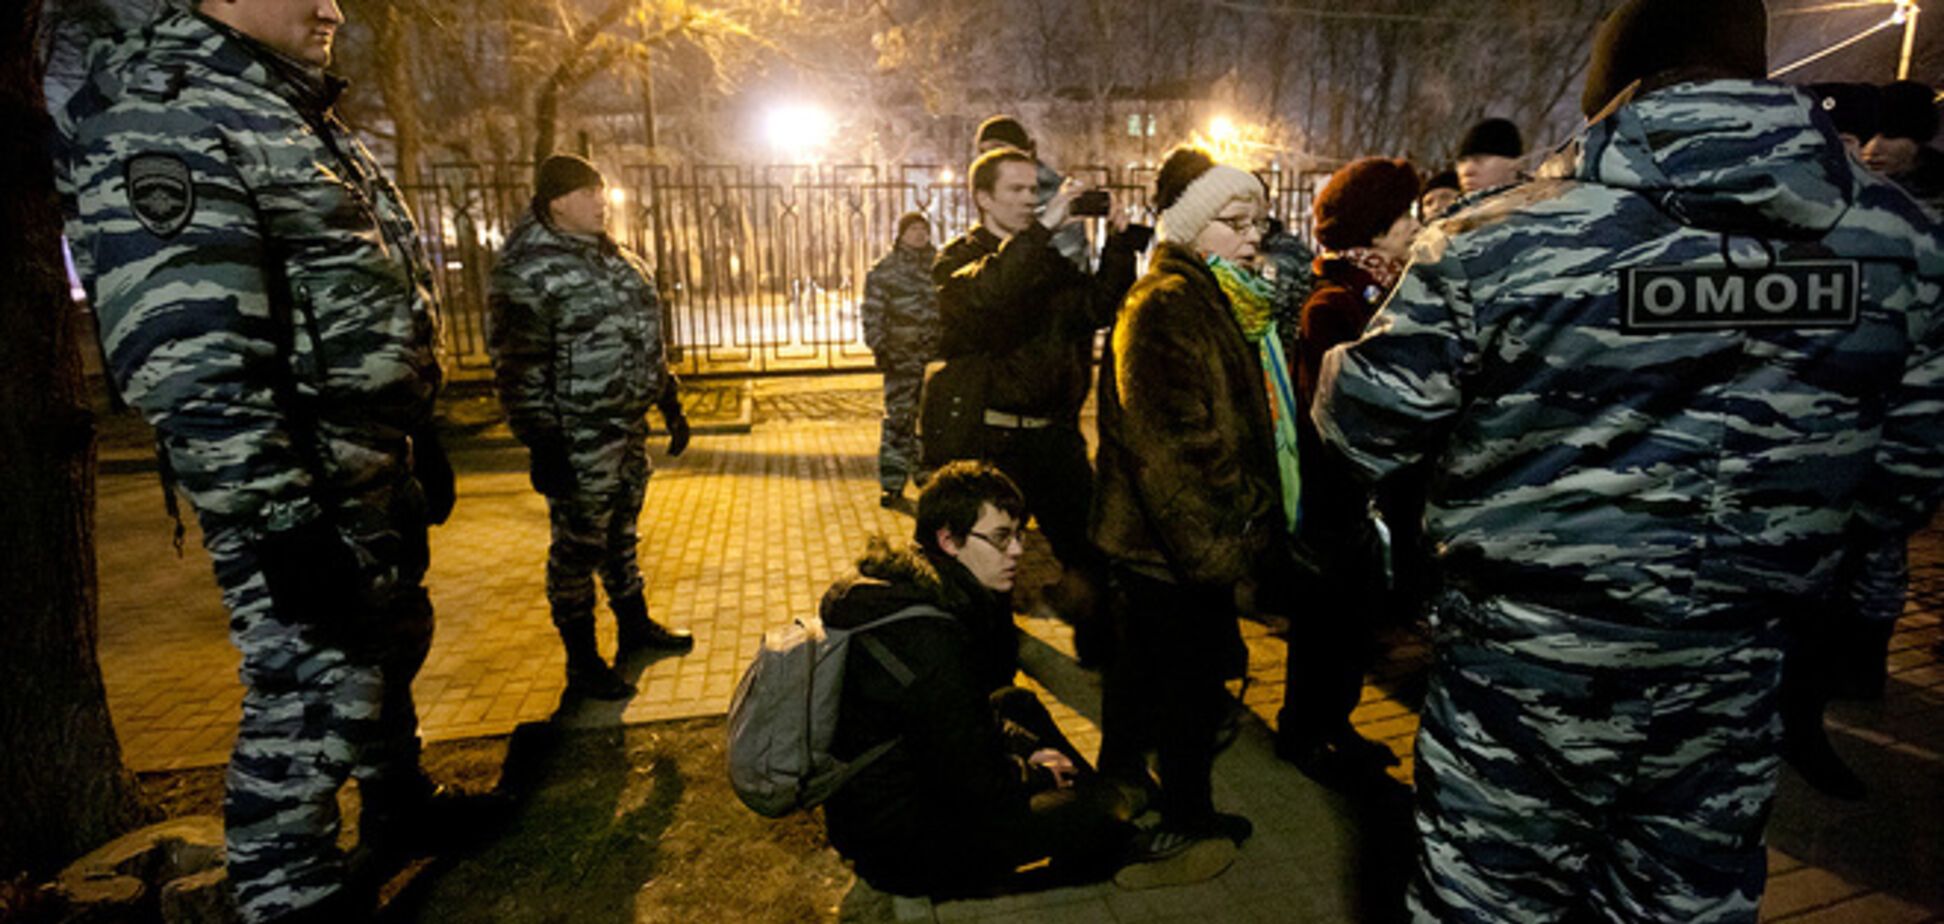 'ДНР' - гори в пеклі. Москвичи вышли на шествие в честь годовщины Евромайдана